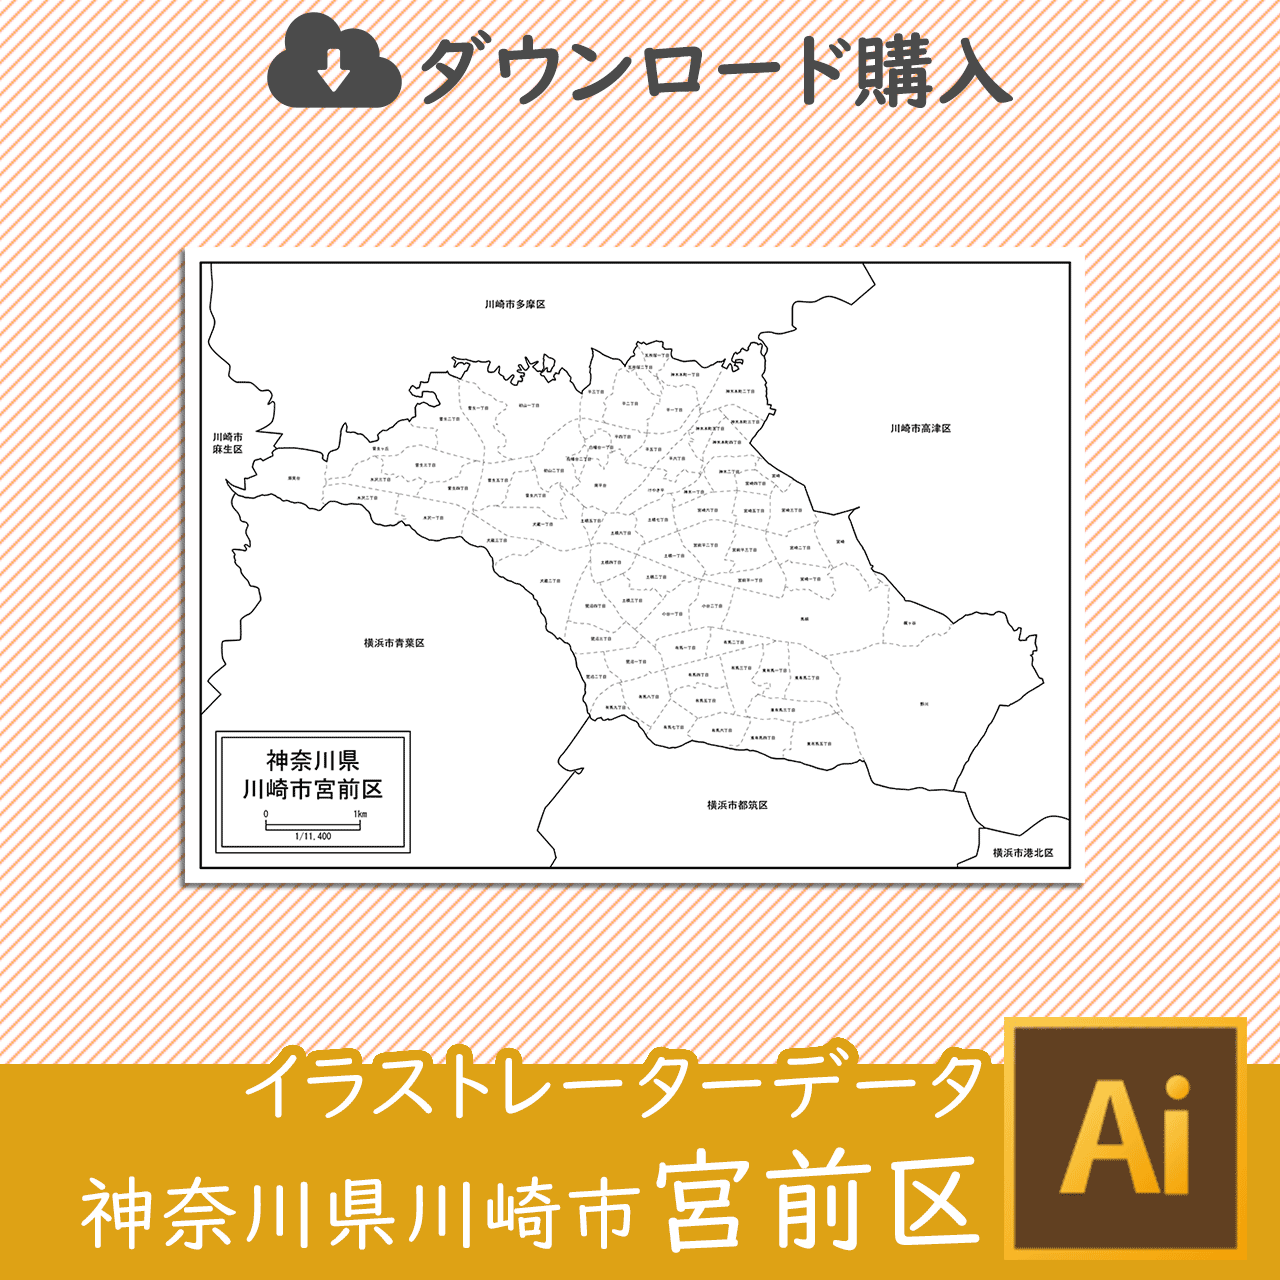 川崎市宮前区のaiデータのサムネイル画像